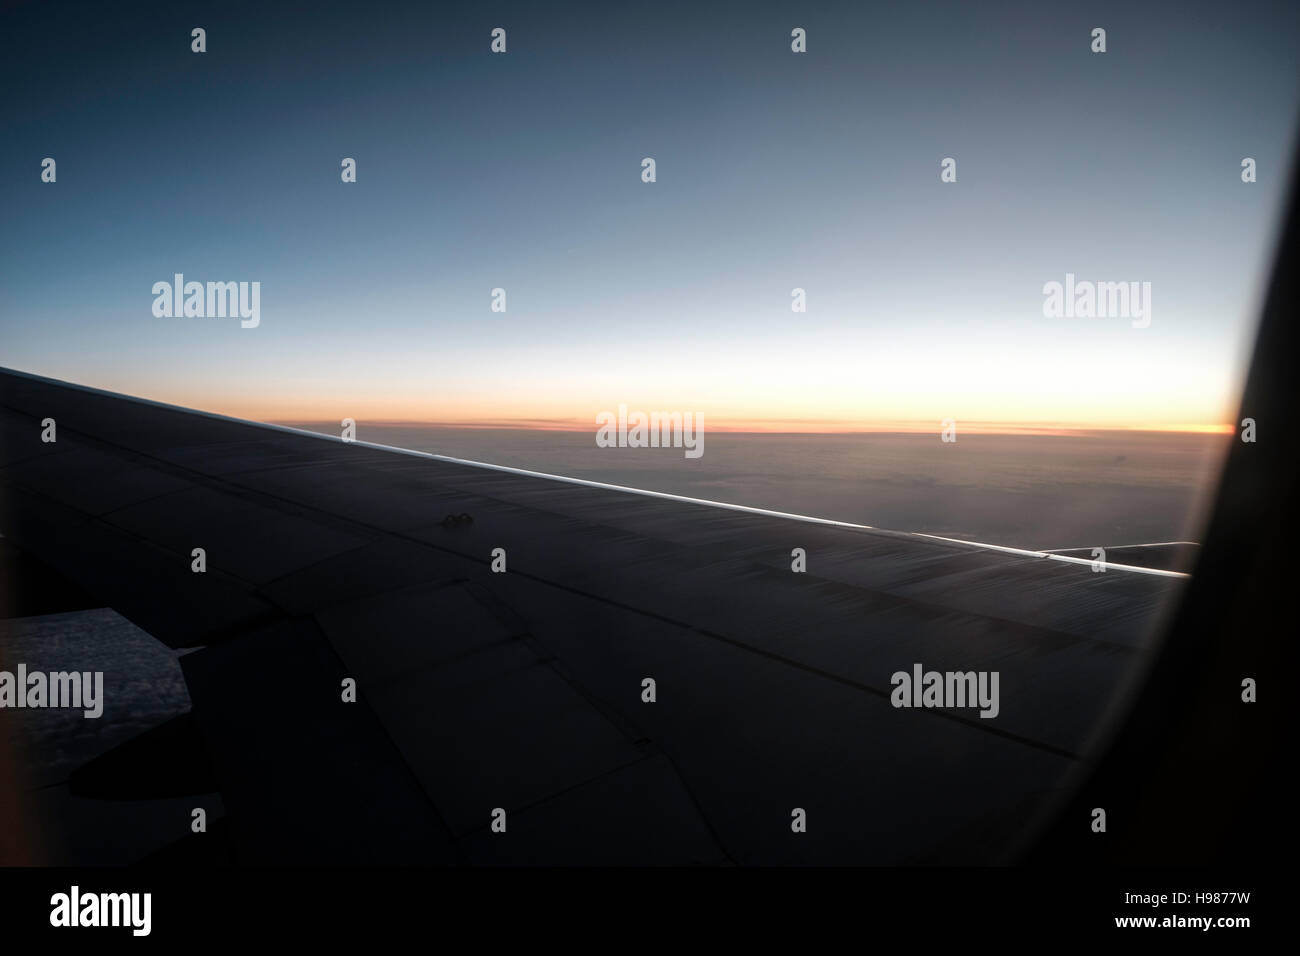 Visualizza la finestra di aeroplano nuvole drammatica corsa del sedile Foto Stock